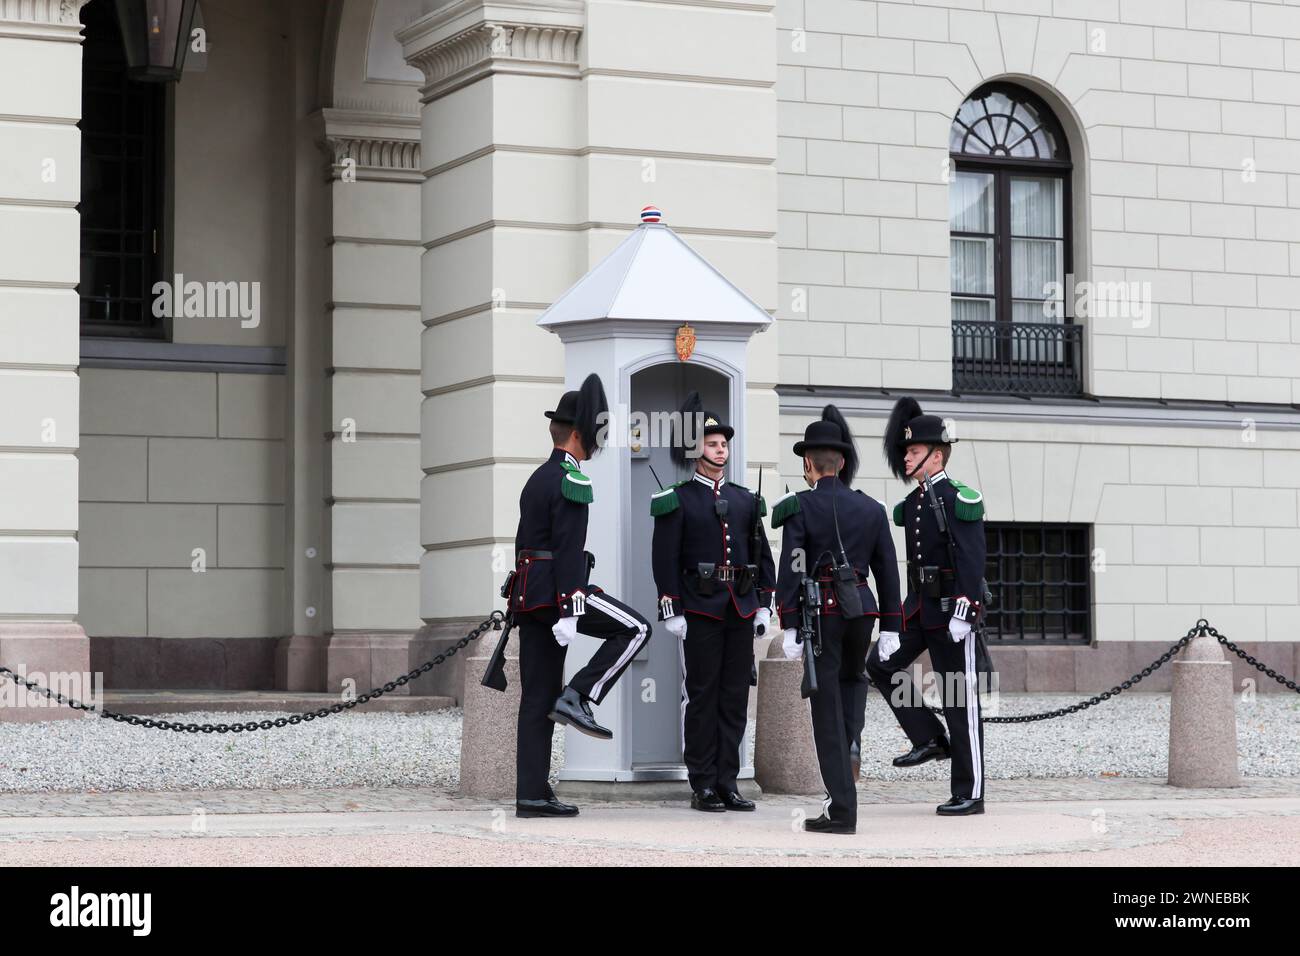 Oslo, Norvegia - 27 agosto 2018: Cambio della guardia al palazzo reale di Oslo, Norvegia Foto Stock